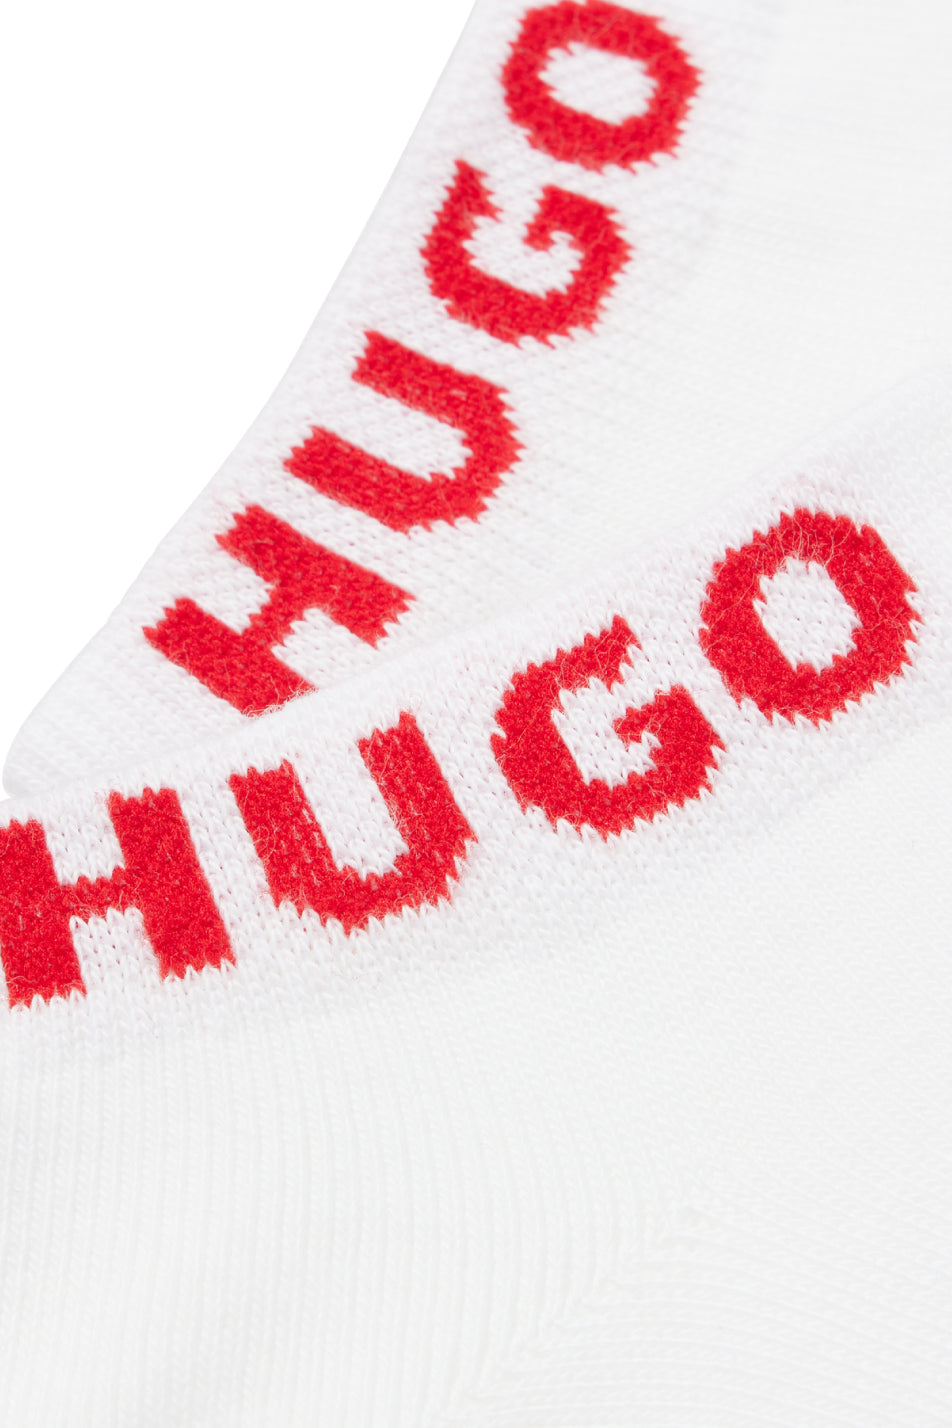 HUGO 3 Pack Men's Uni Sock